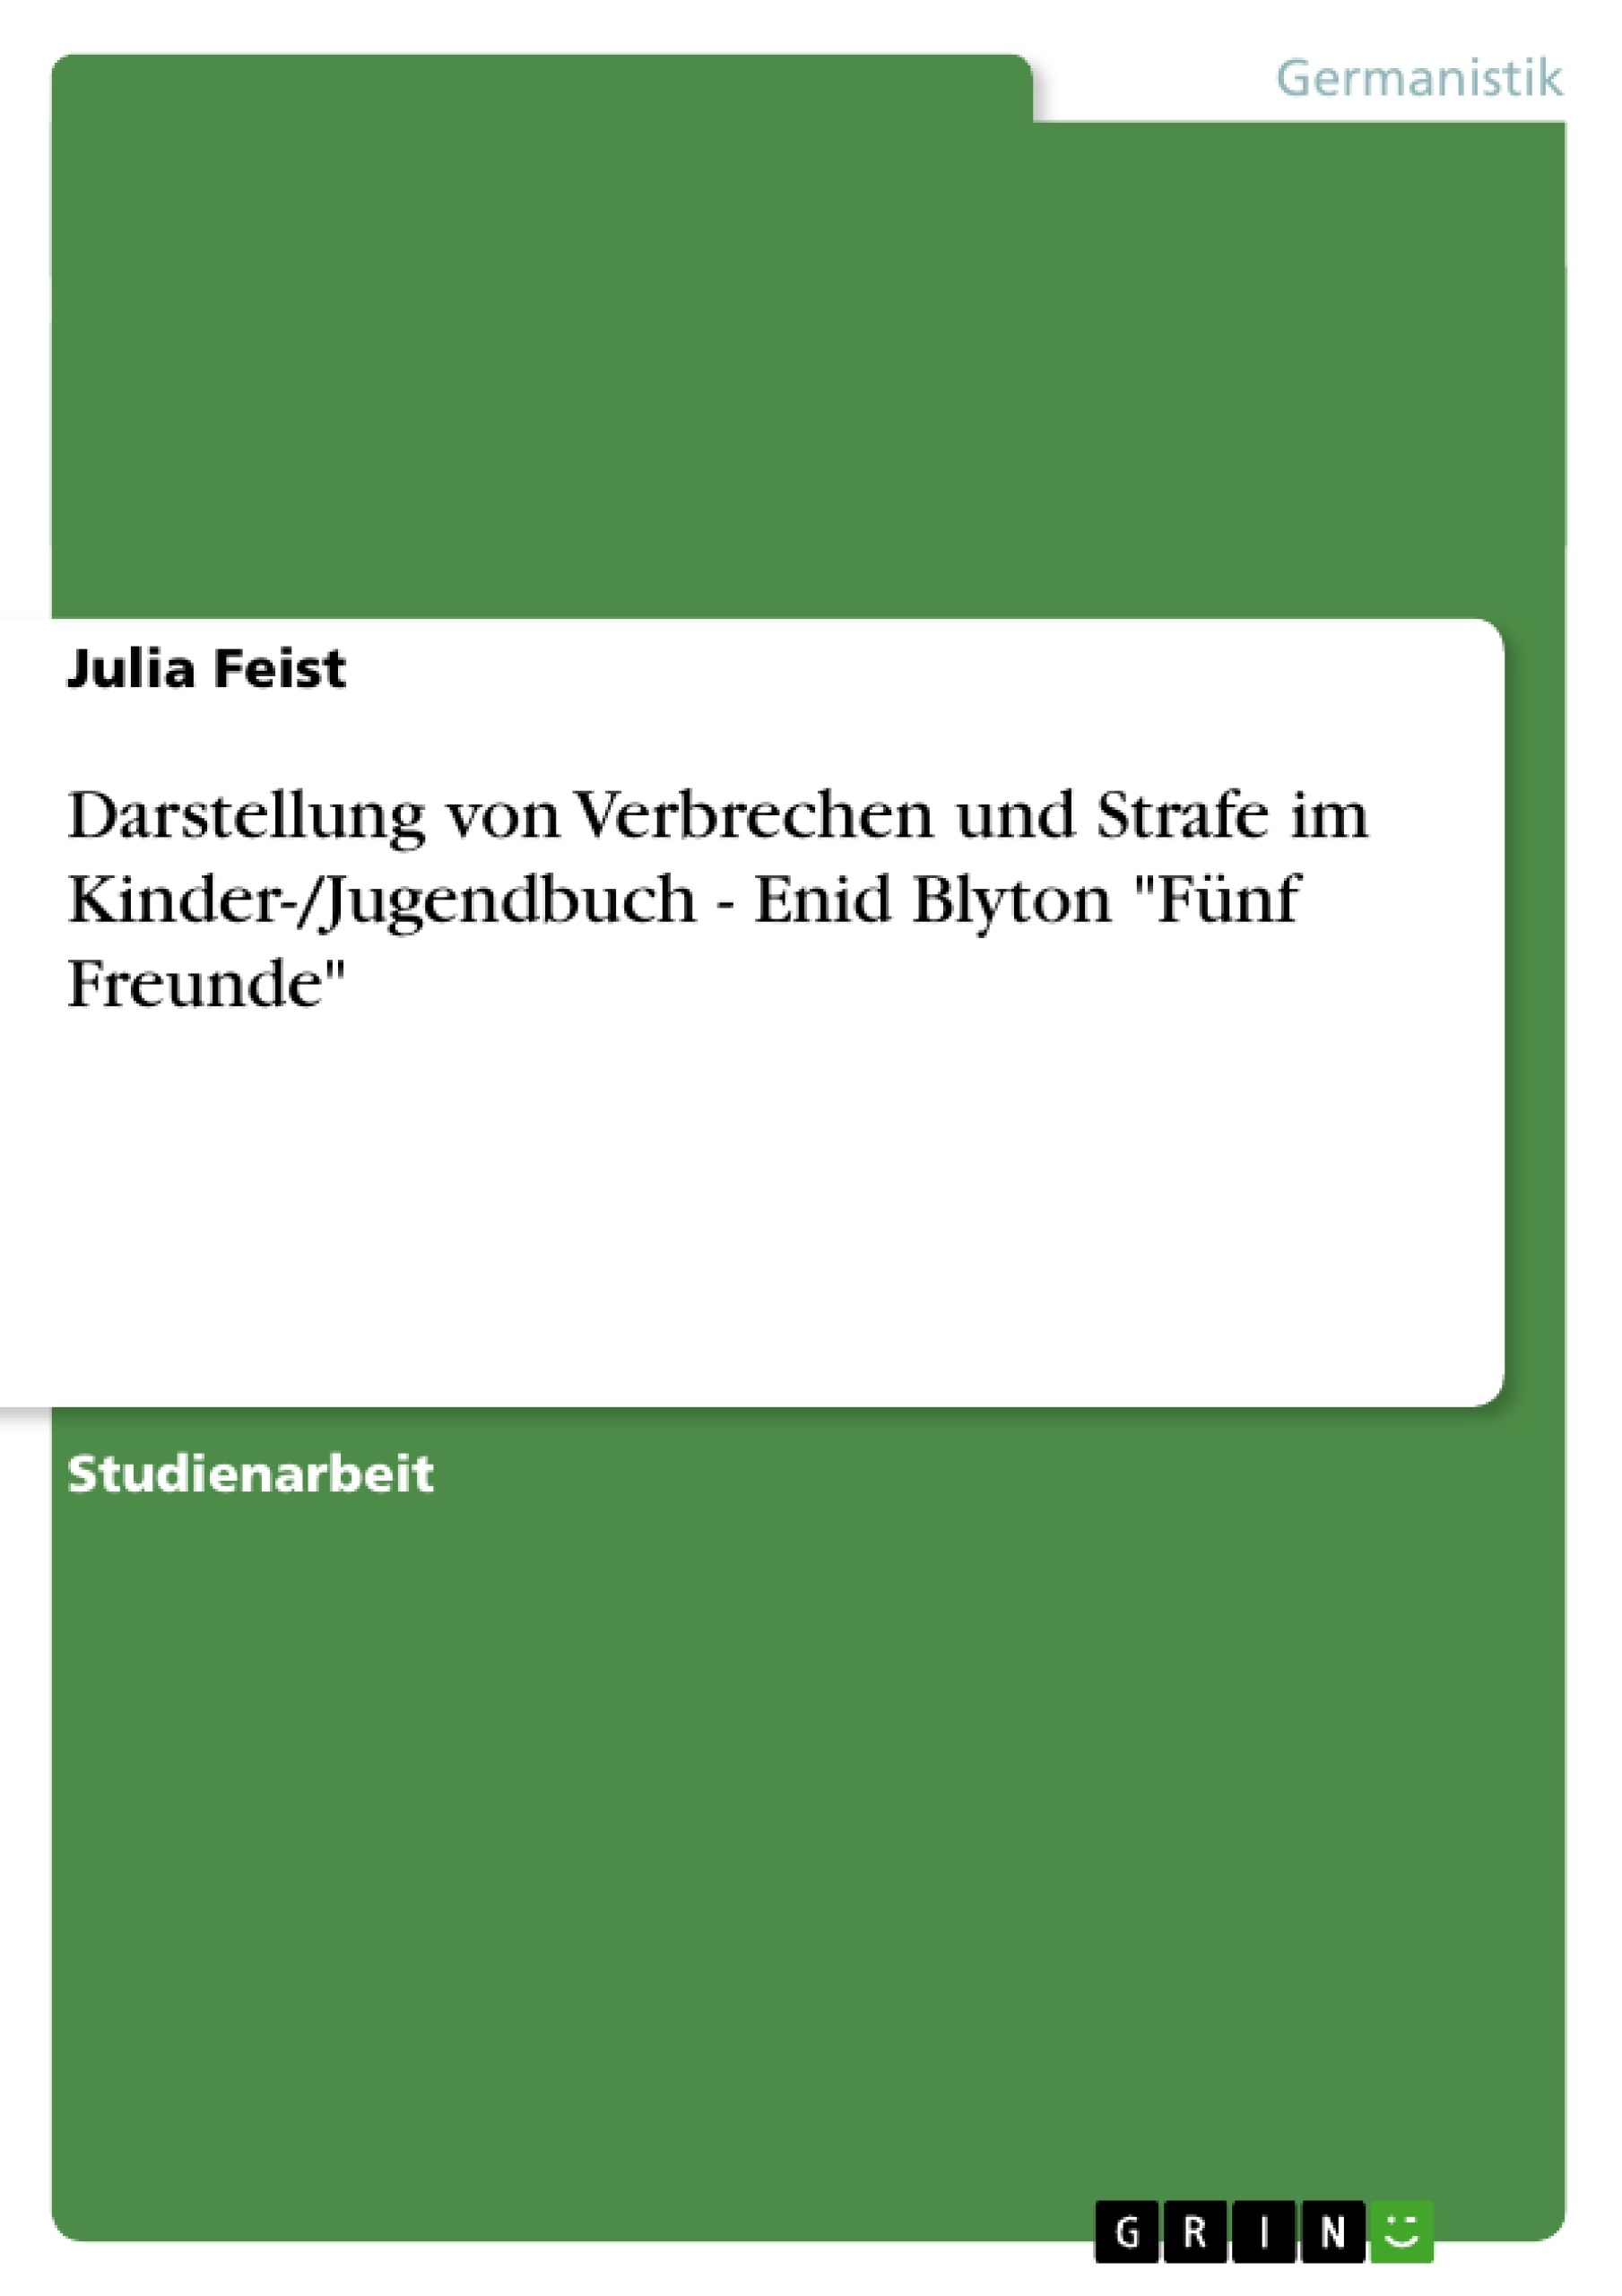 Titre: Darstellung von Verbrechen und Strafe im Kinder-/Jugendbuch - Enid Blyton "Fünf Freunde"